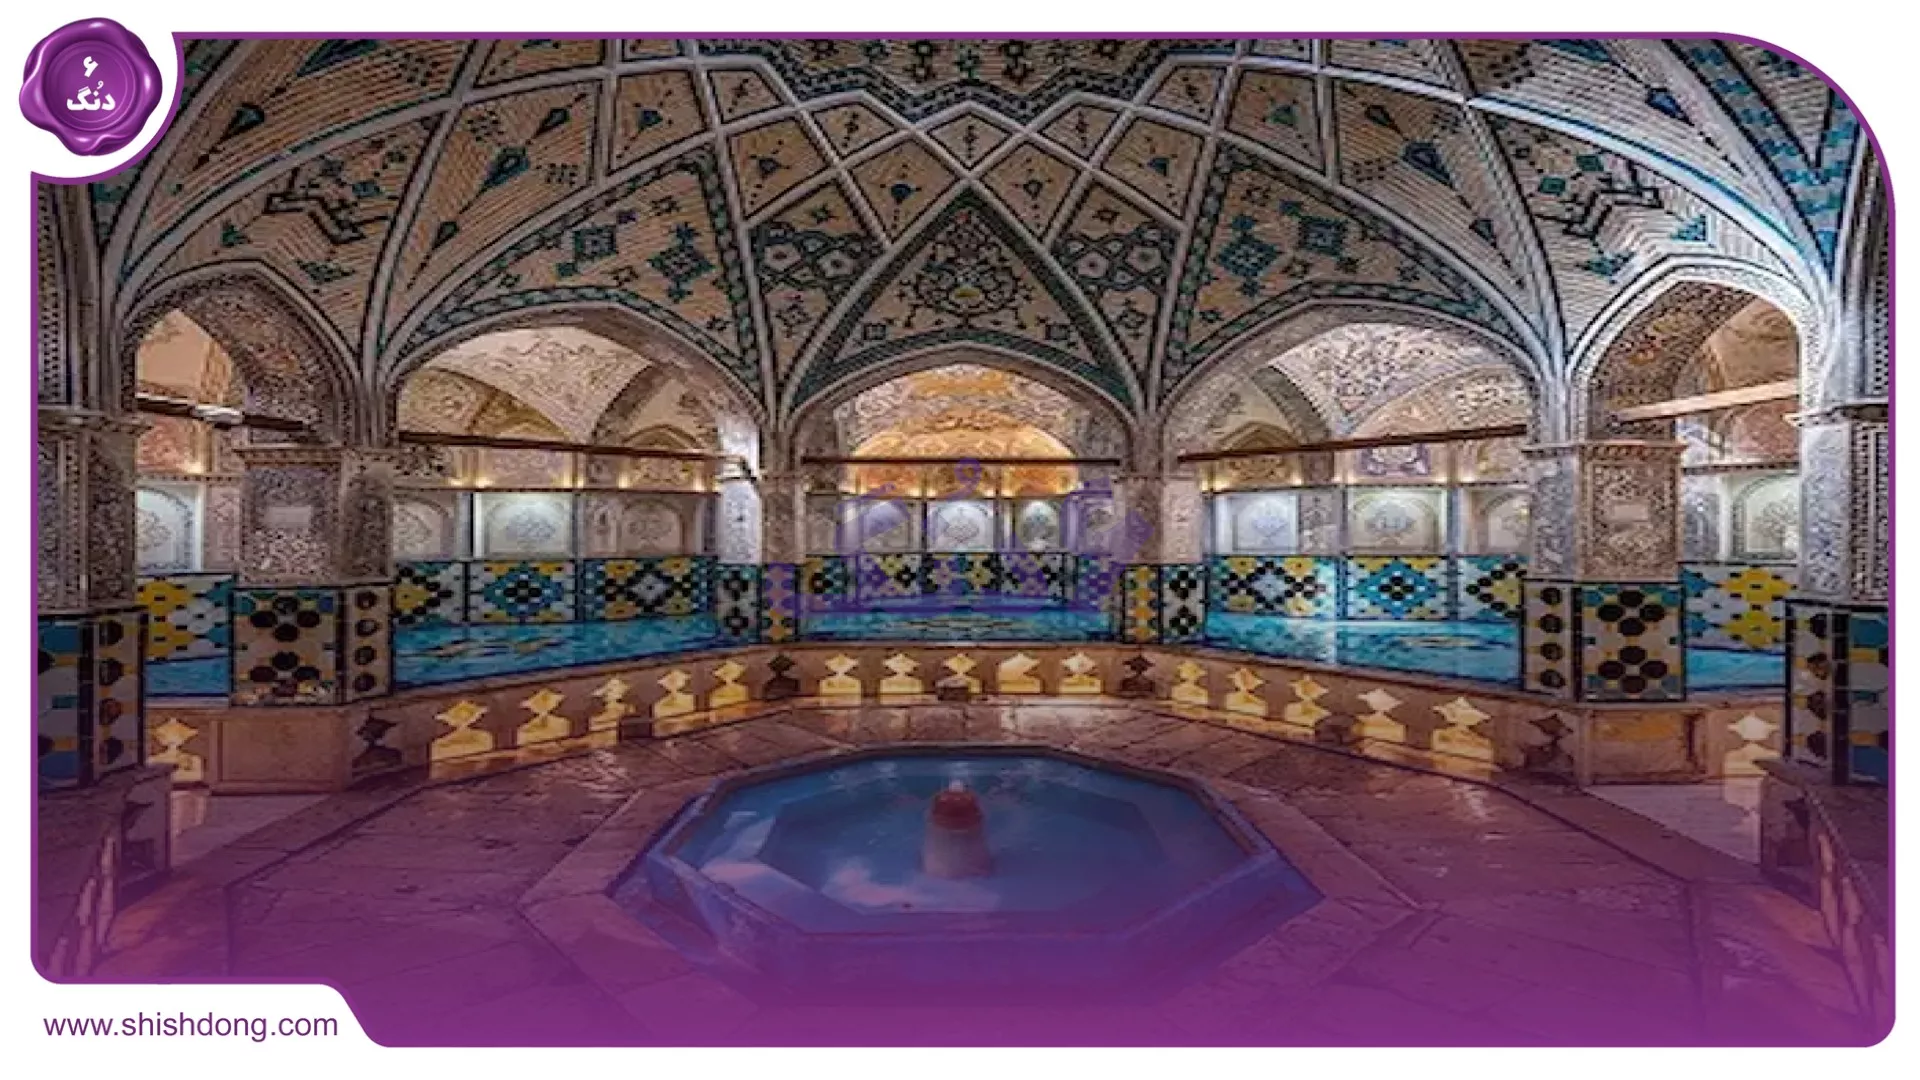 حمام های قدیمی میرزا آقاخانی ایزدشهر